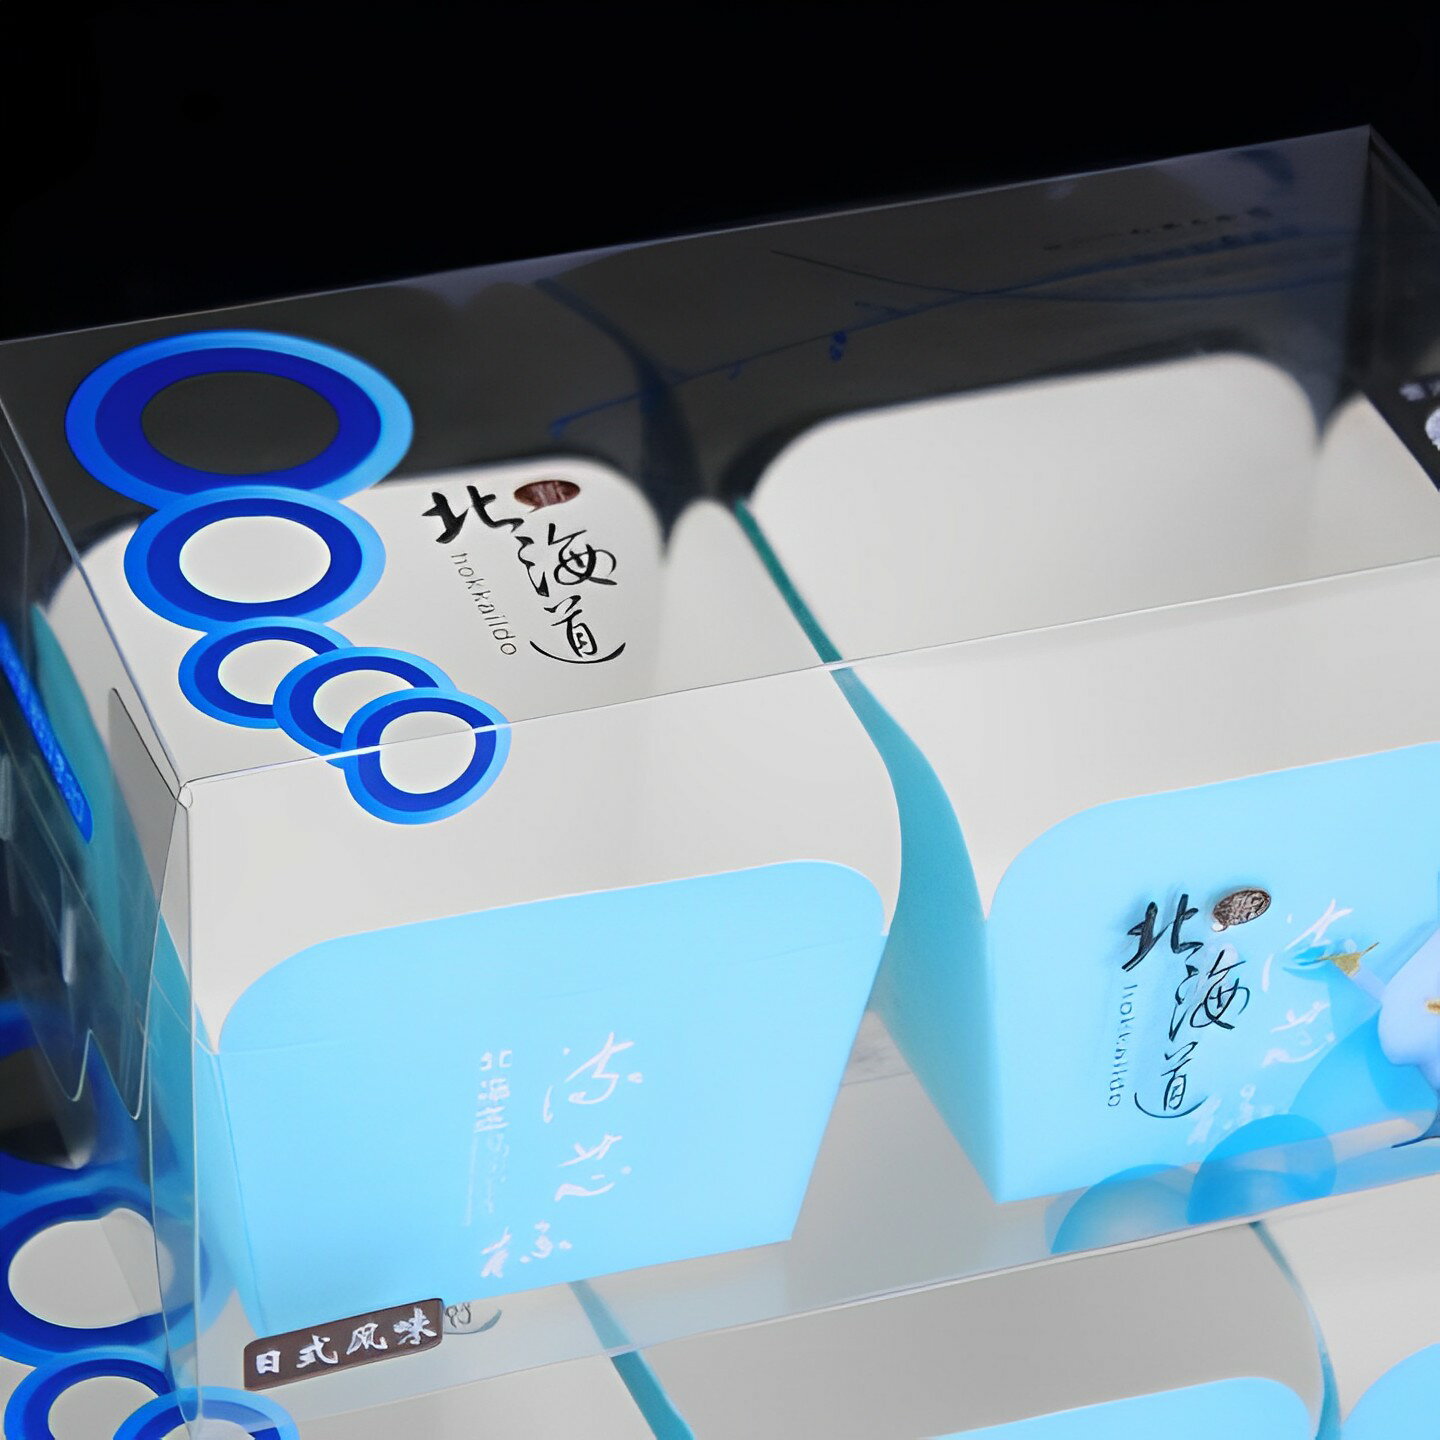 3粒戚風盒(藍/北海道)-10入(內含戚風底托盒 30入)【良鎂咖啡餐飲烘焙批發】